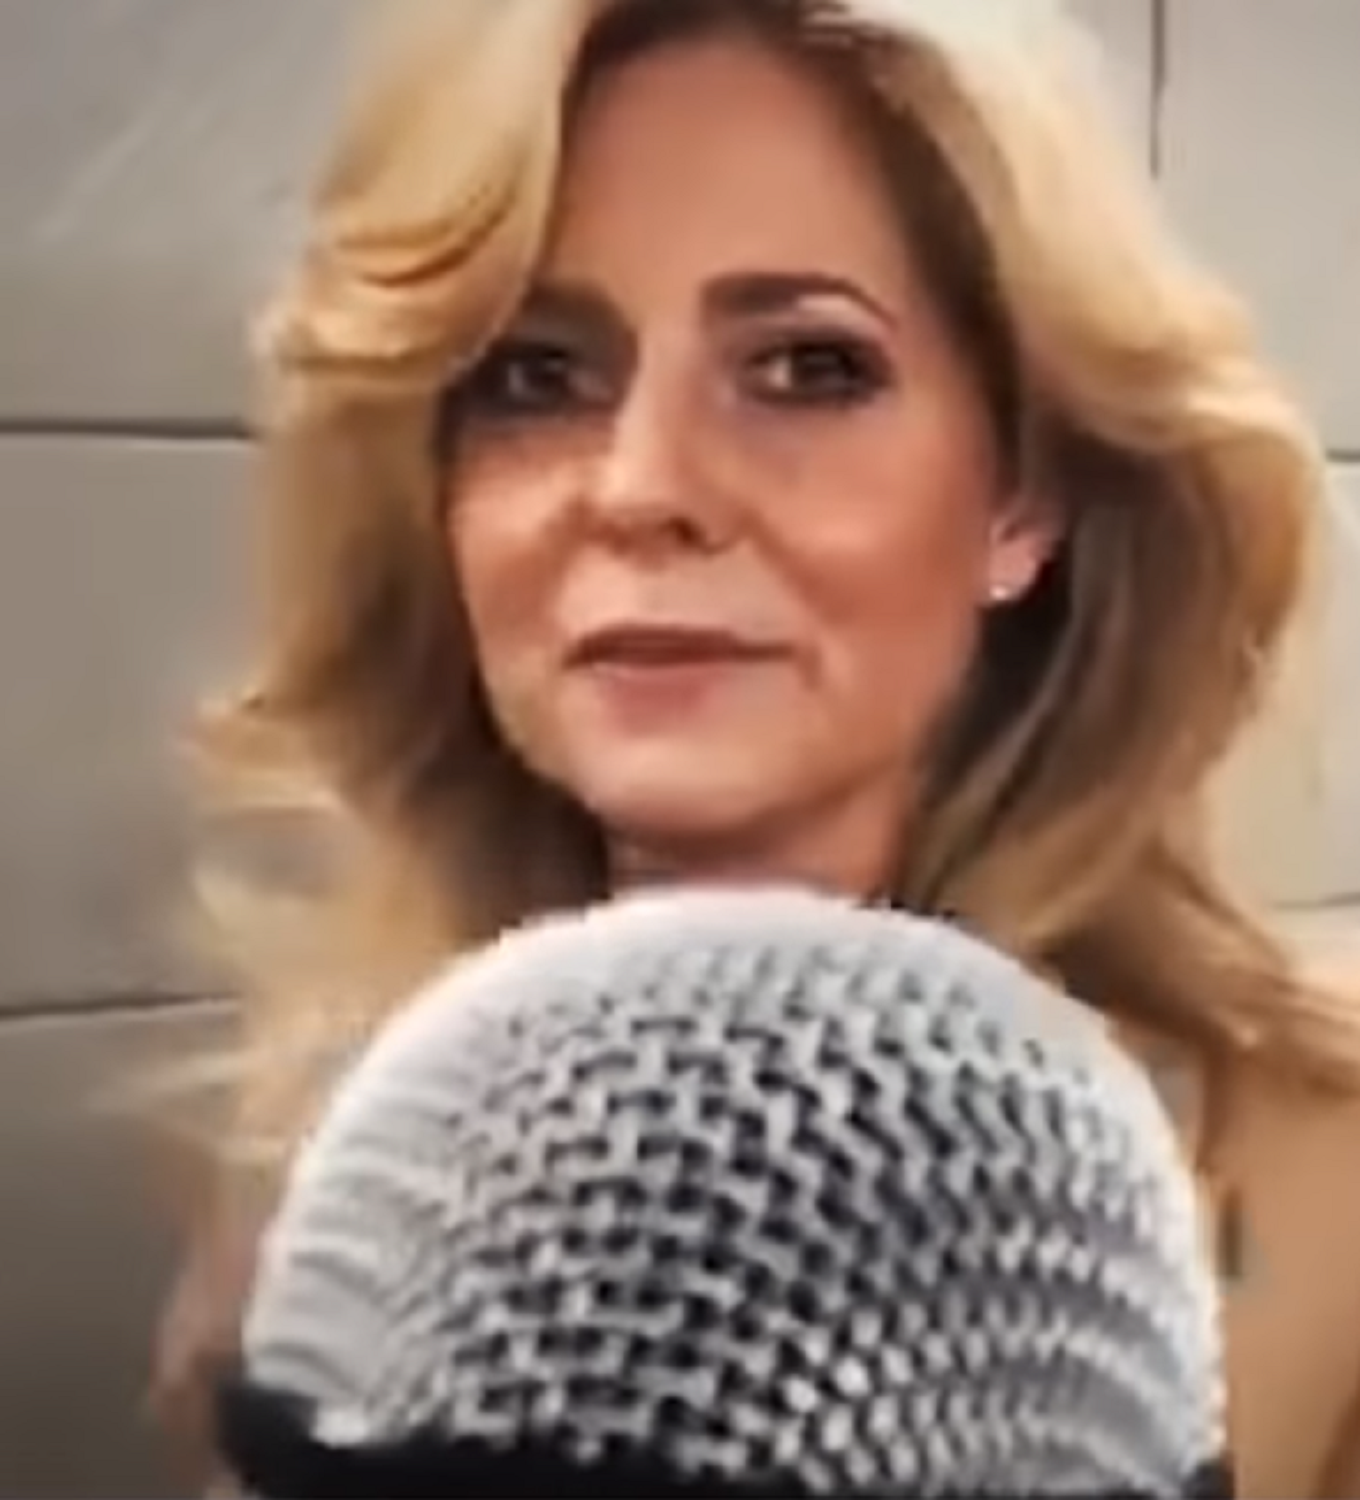 Mujer canta metro Londres / YouTube